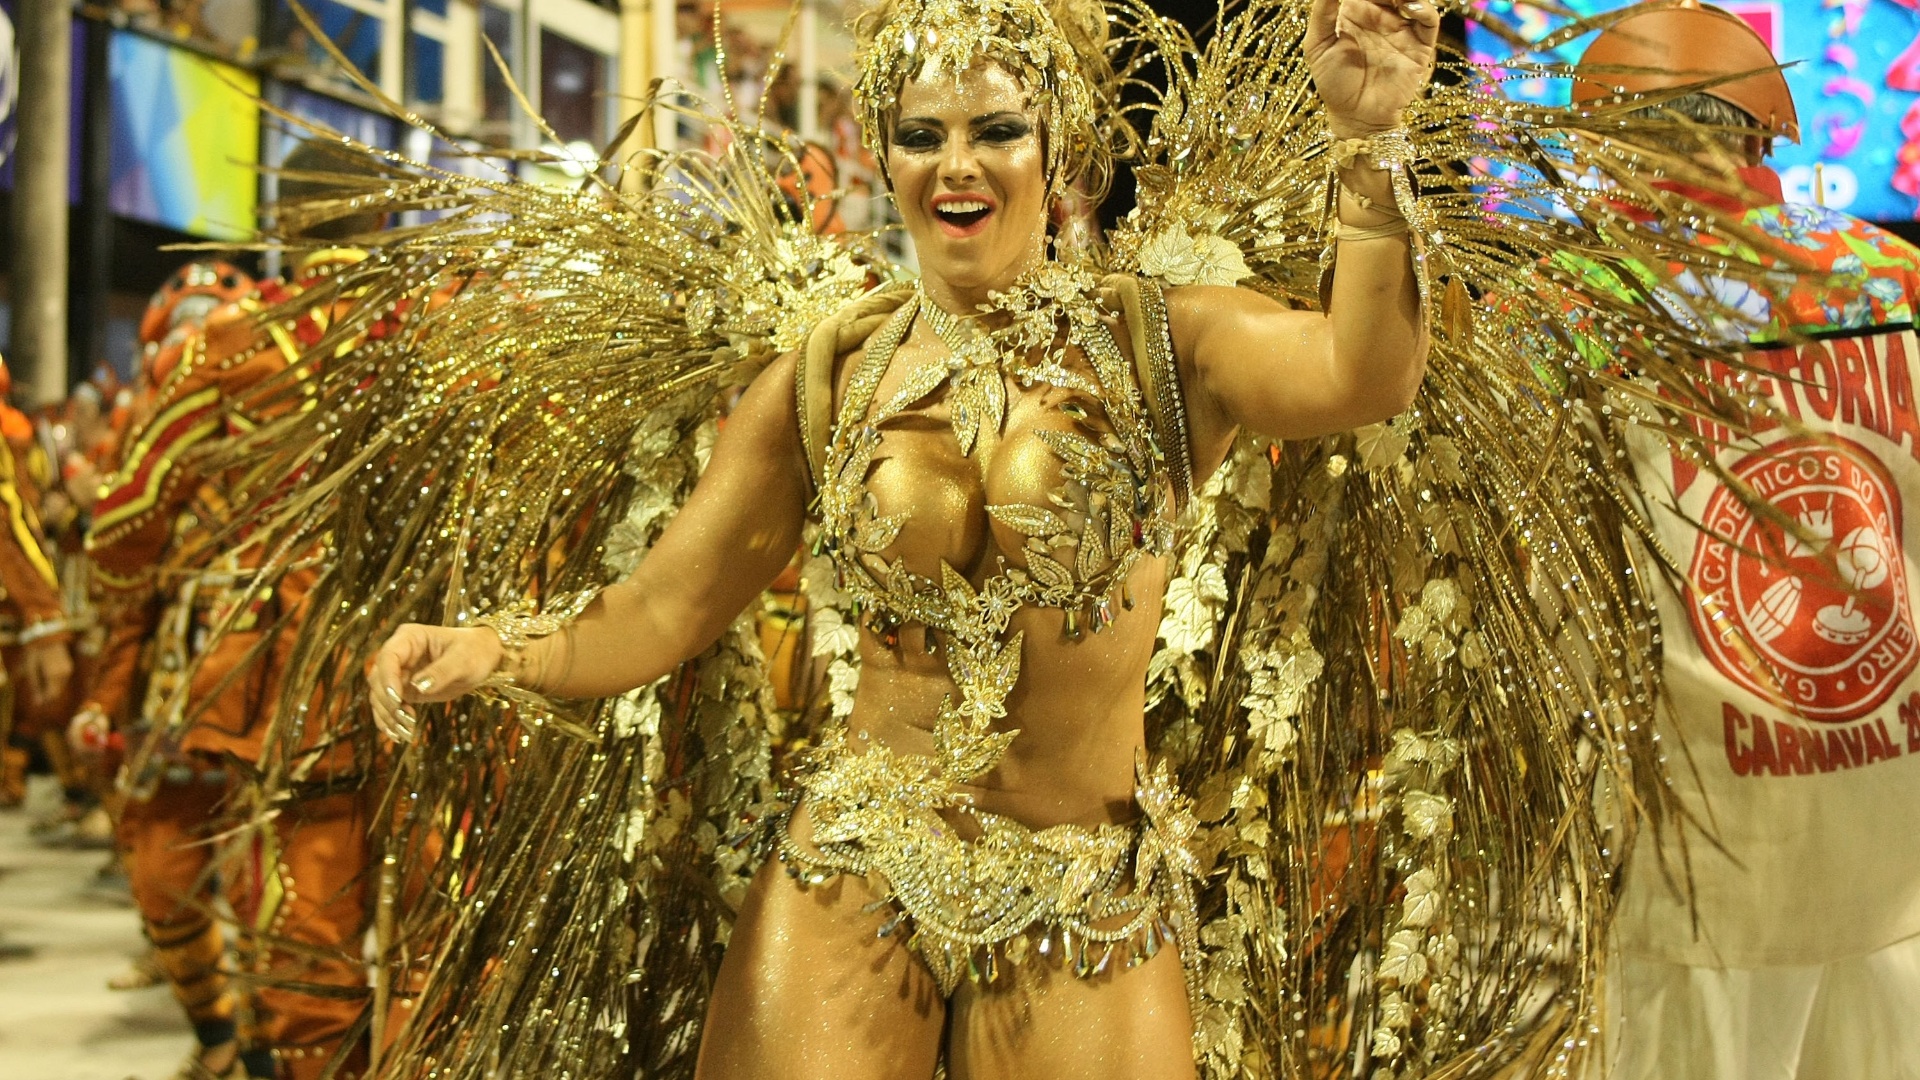 A rainha de bateria Viviane Araújo samba em desfile da Salgueiro na Sapucaí, no Rio (20/2/12)